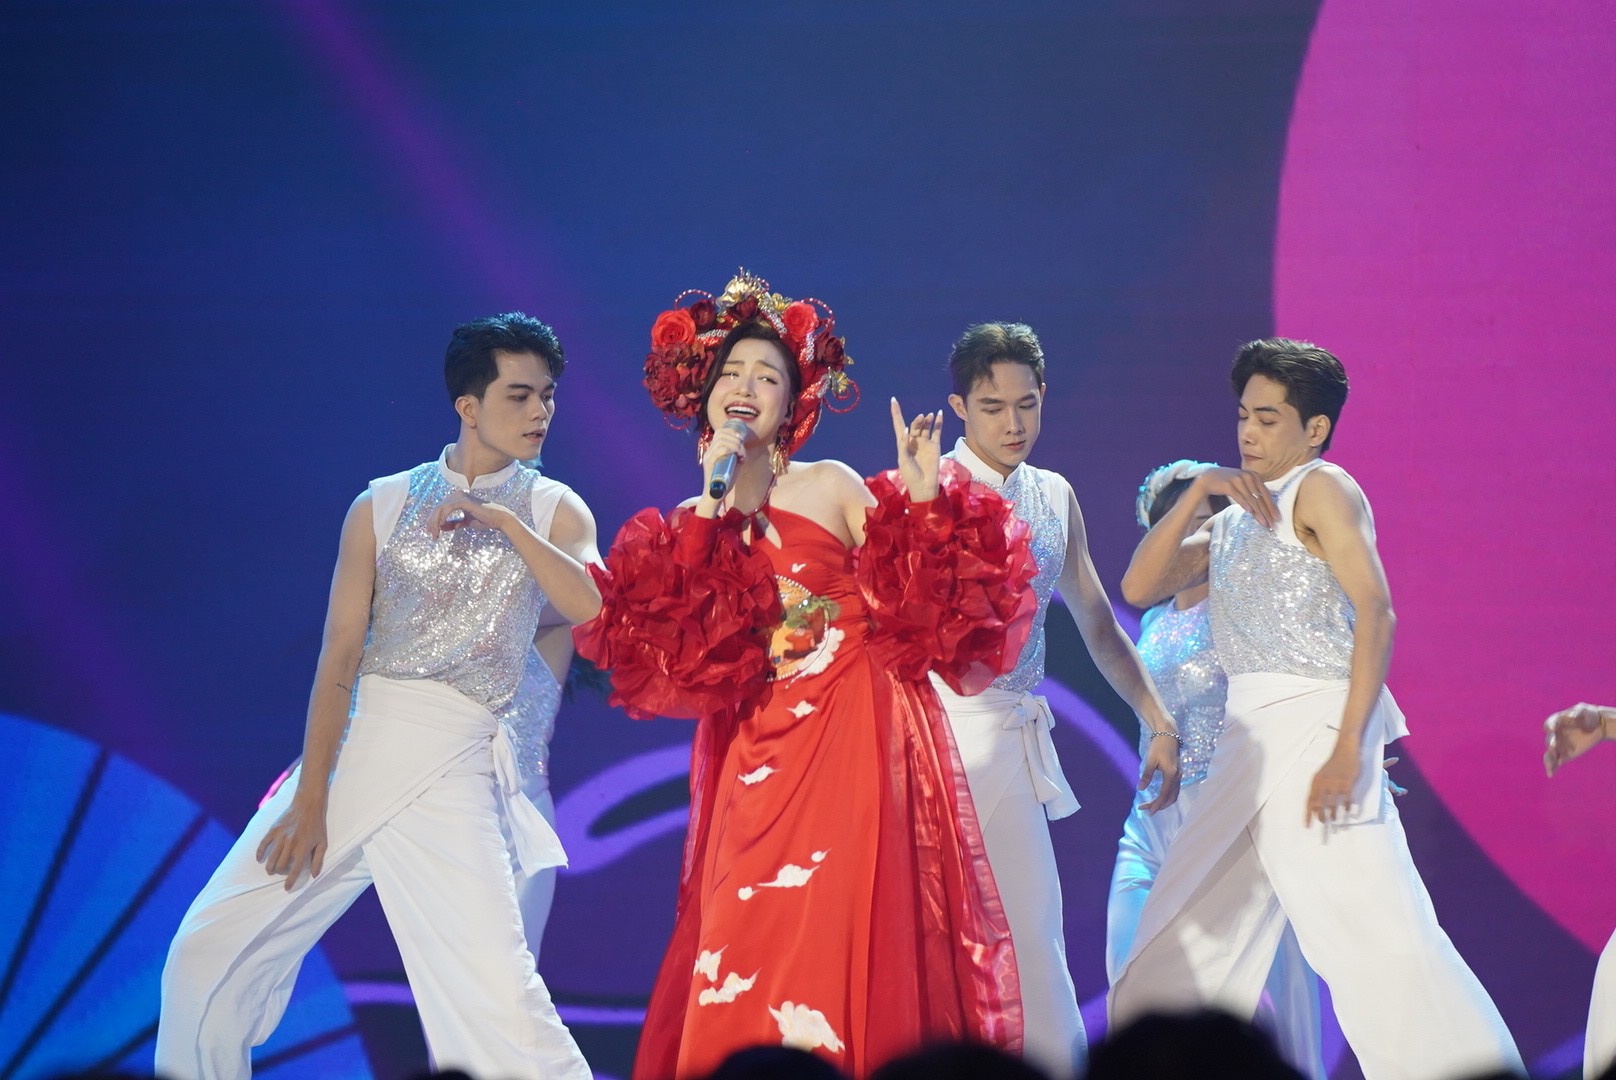 Hoàng Thùy Linh bị hủy show tập 12 "Vietnam Idol"?